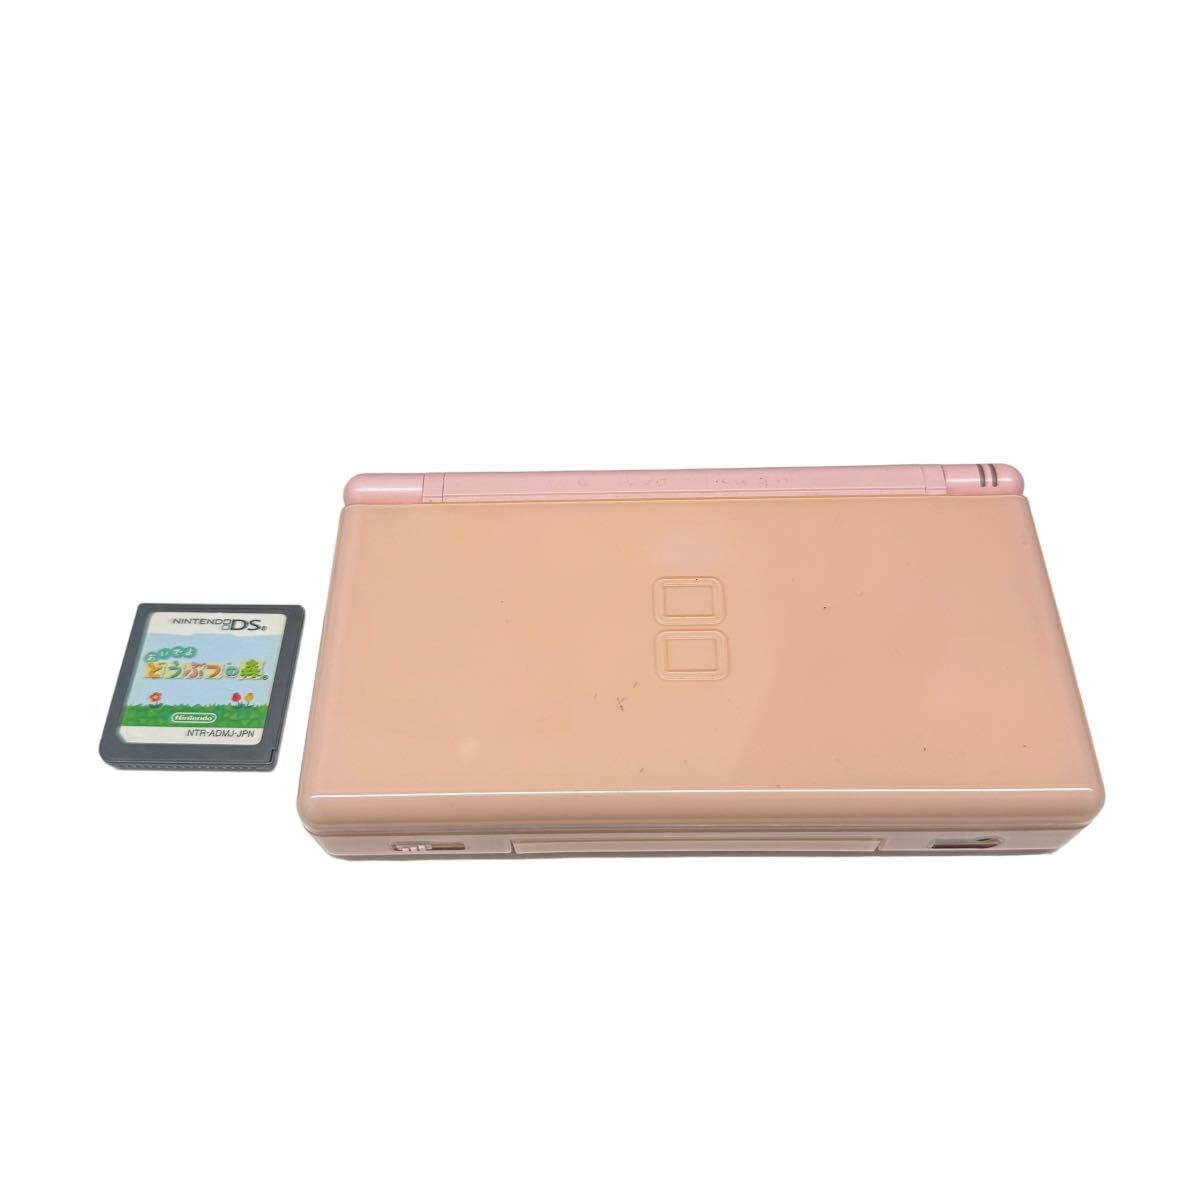 Nintendo DS Lite 任天堂 ニンテンドーDS Nintendo DS Lite USG-001 ピンク 本体 ジャンク品 どうぶつの森付属 セット販売 10161の画像1